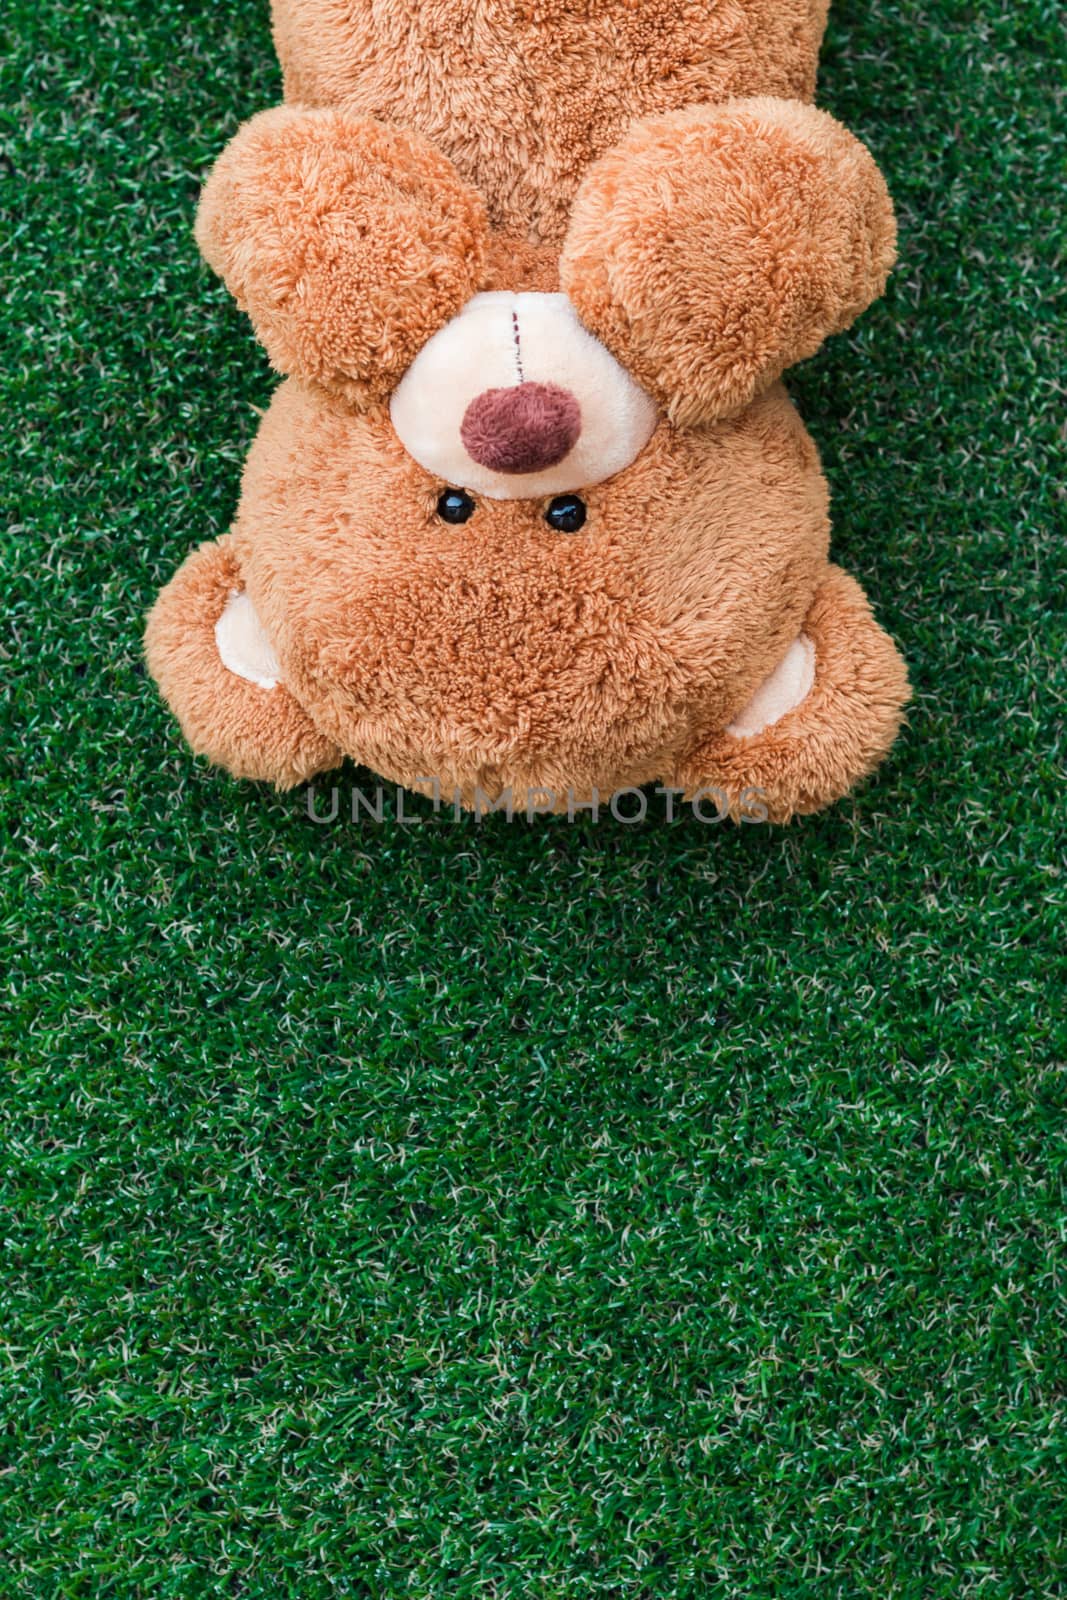 Cute teddy bear by AEyZRiO